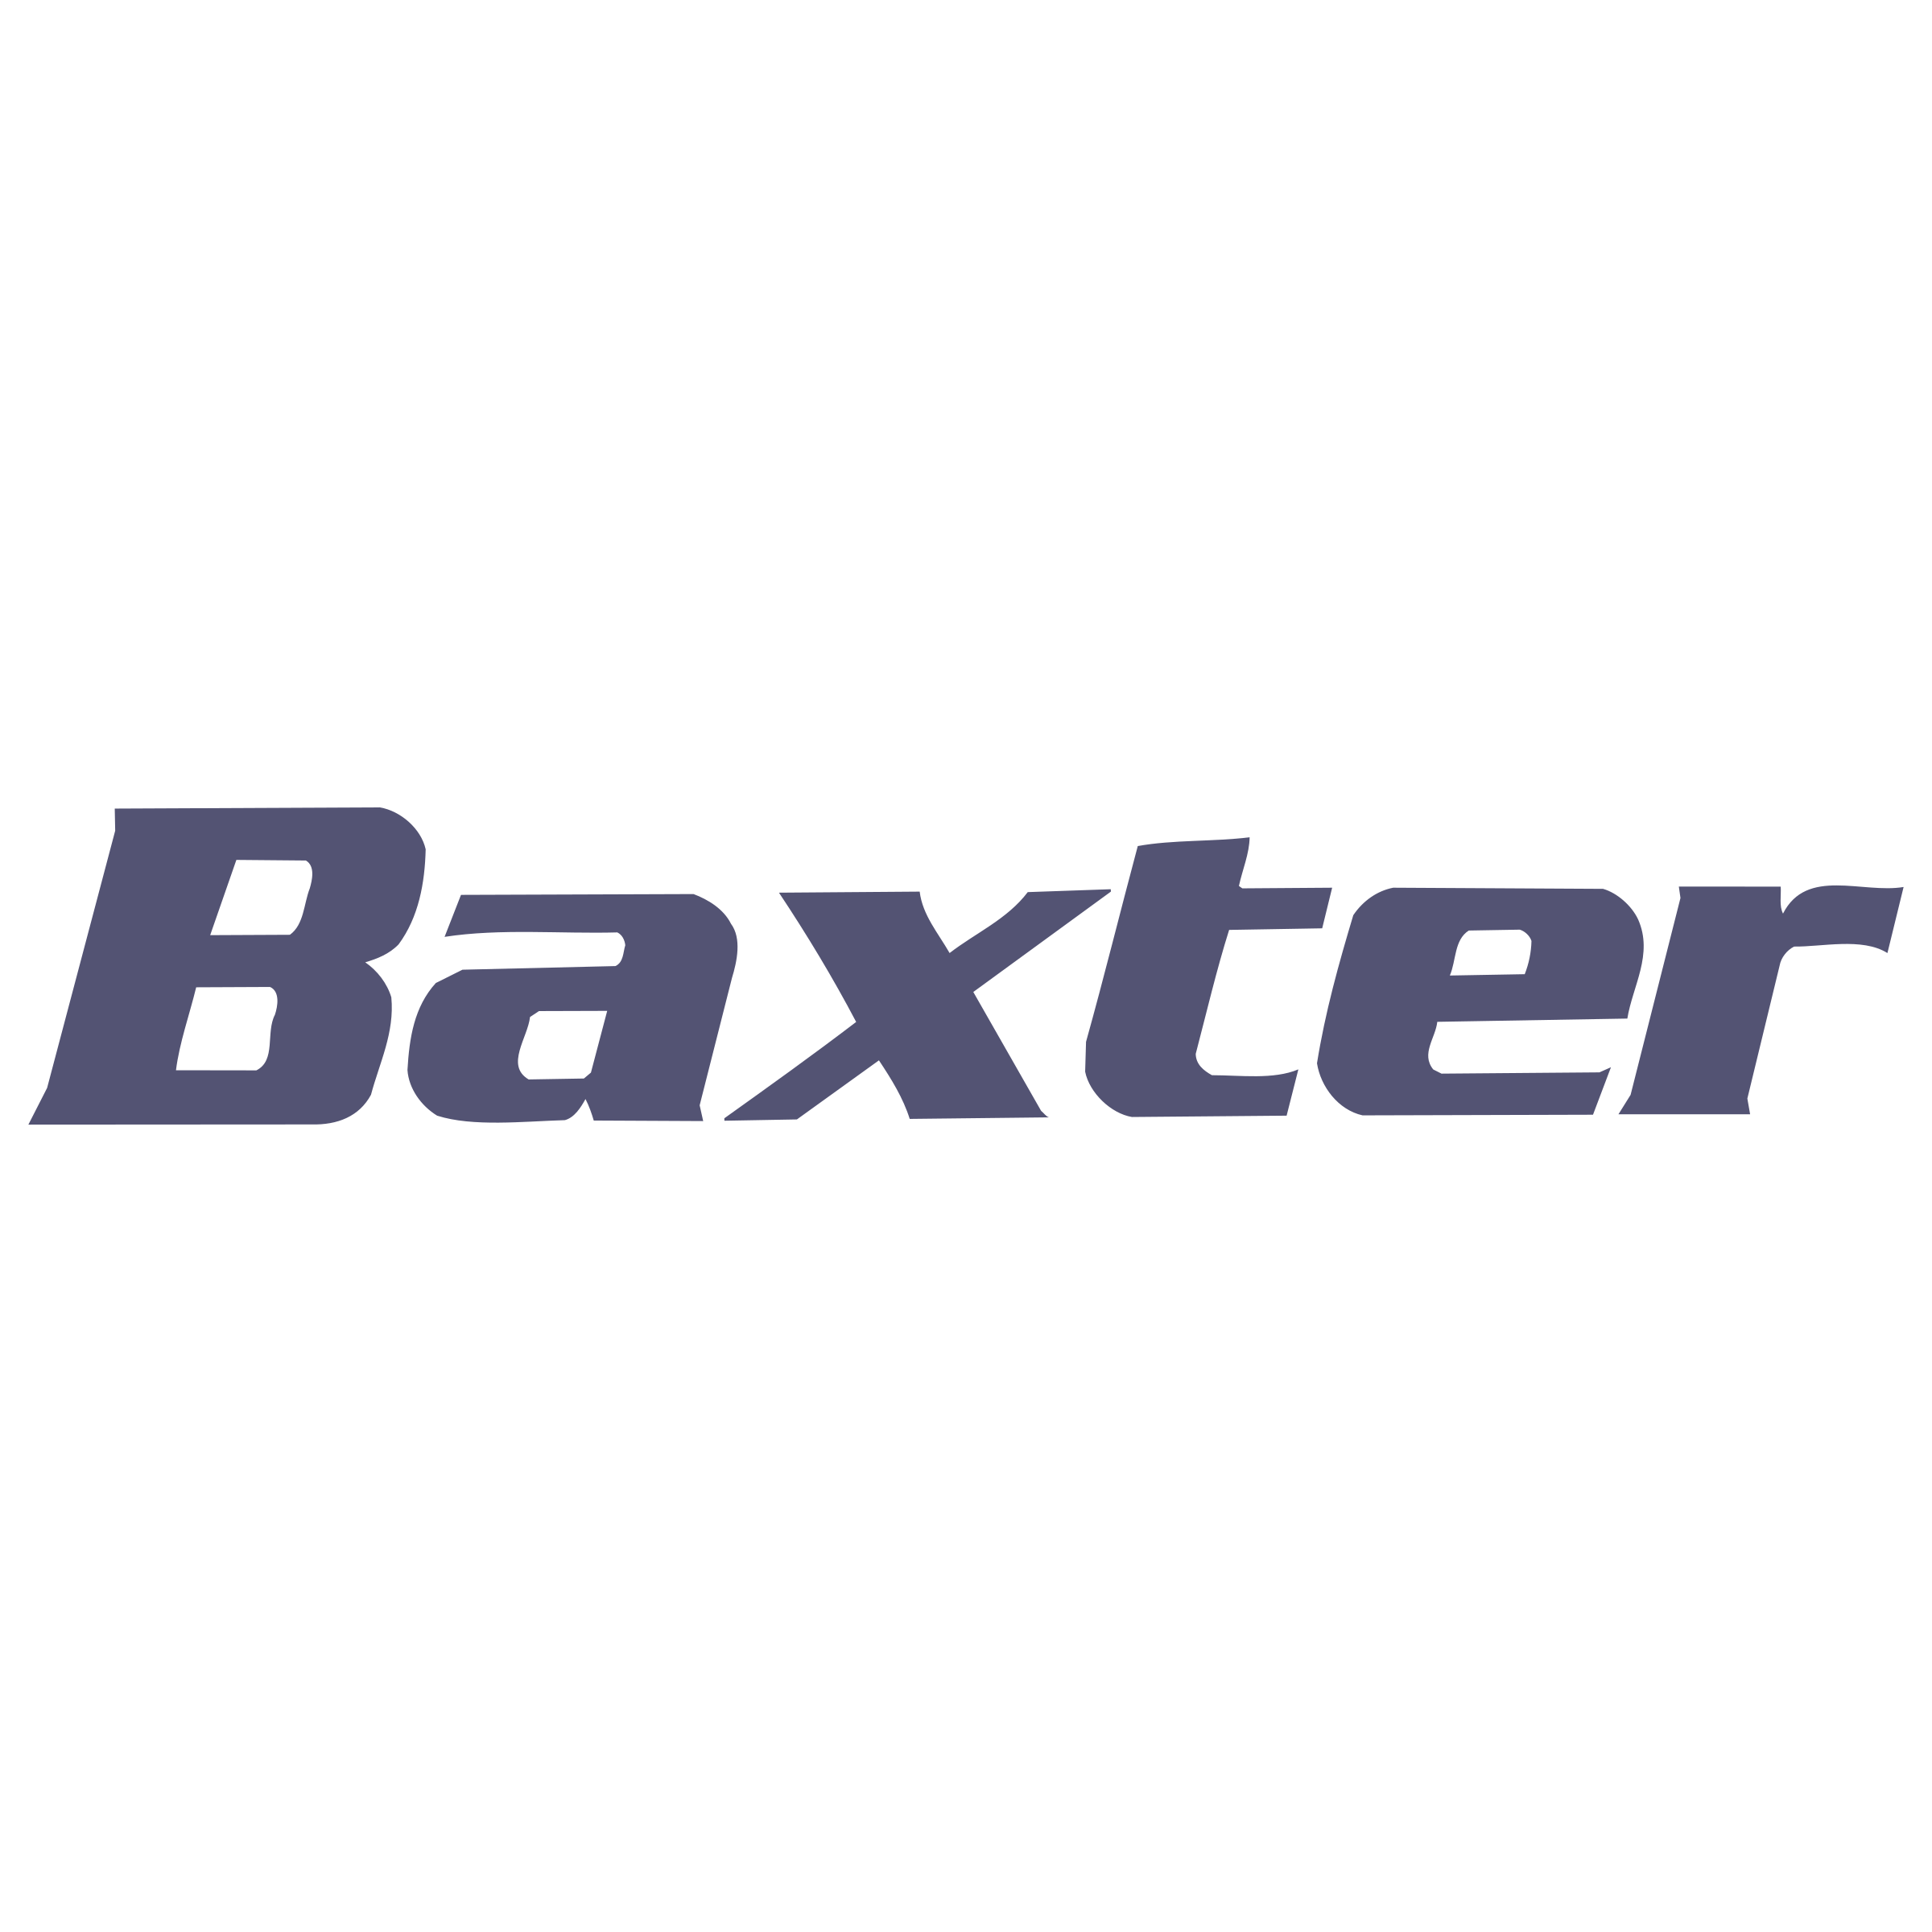 Baxter Logo Free HQ Image PNG Image